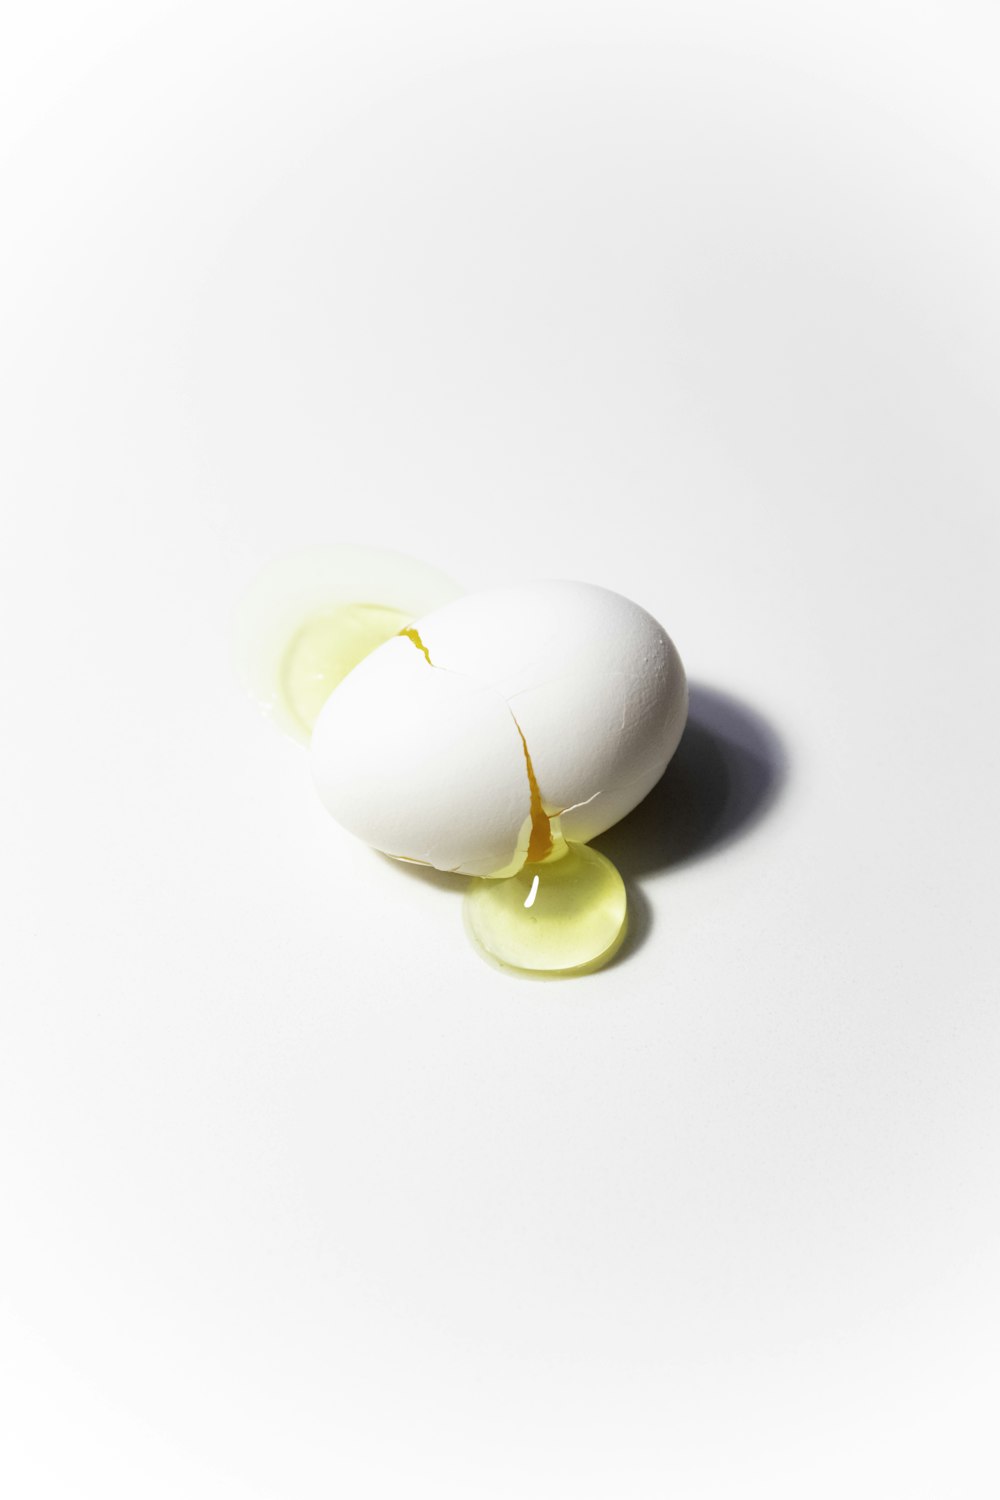 blanc d’œuf sur une surface blanche